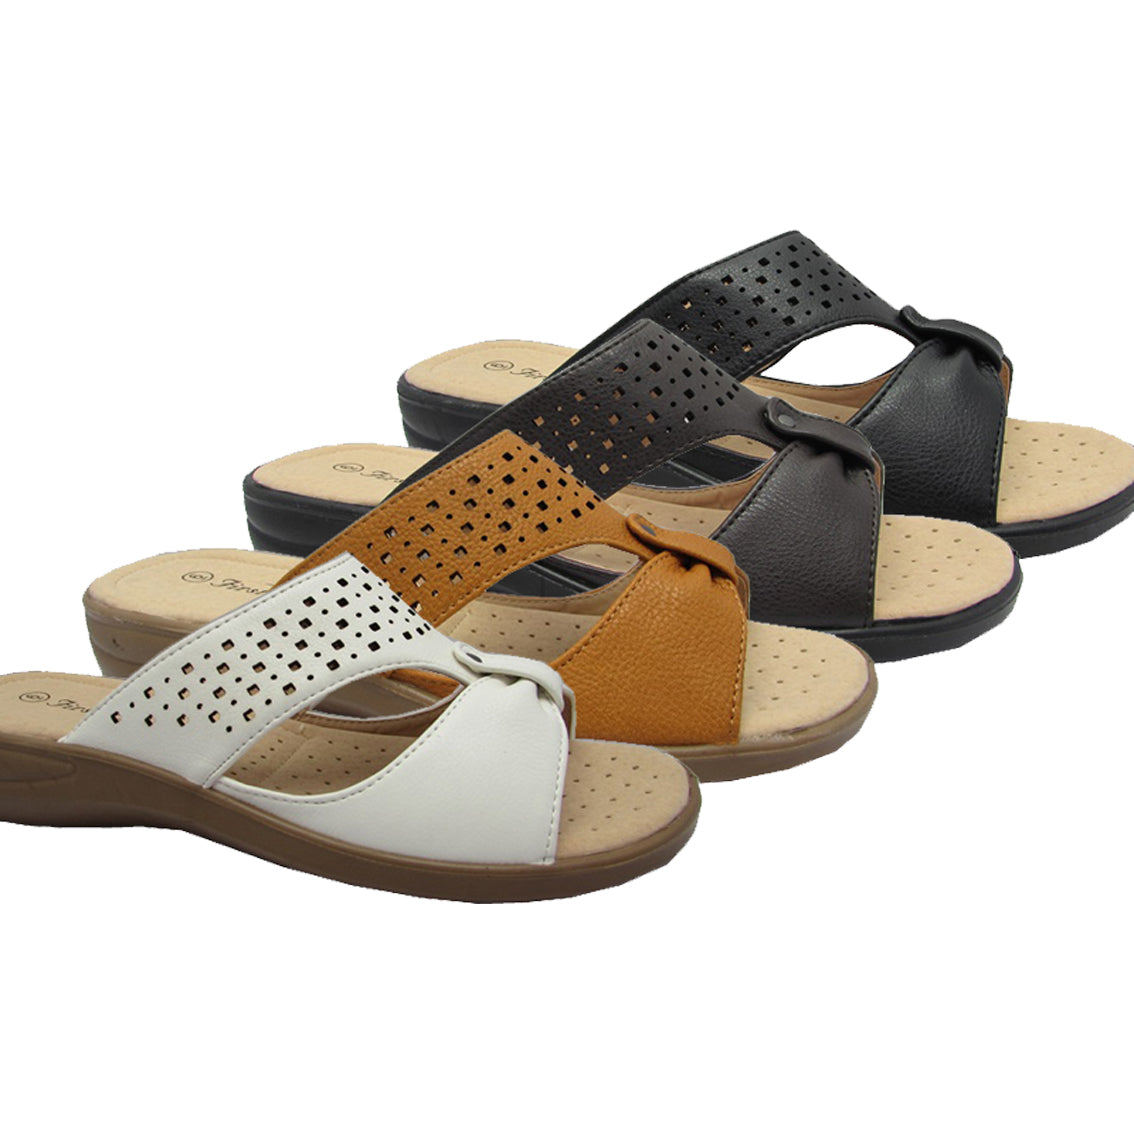 Wholesale Women's Sandals Strap Heavenly NFS4